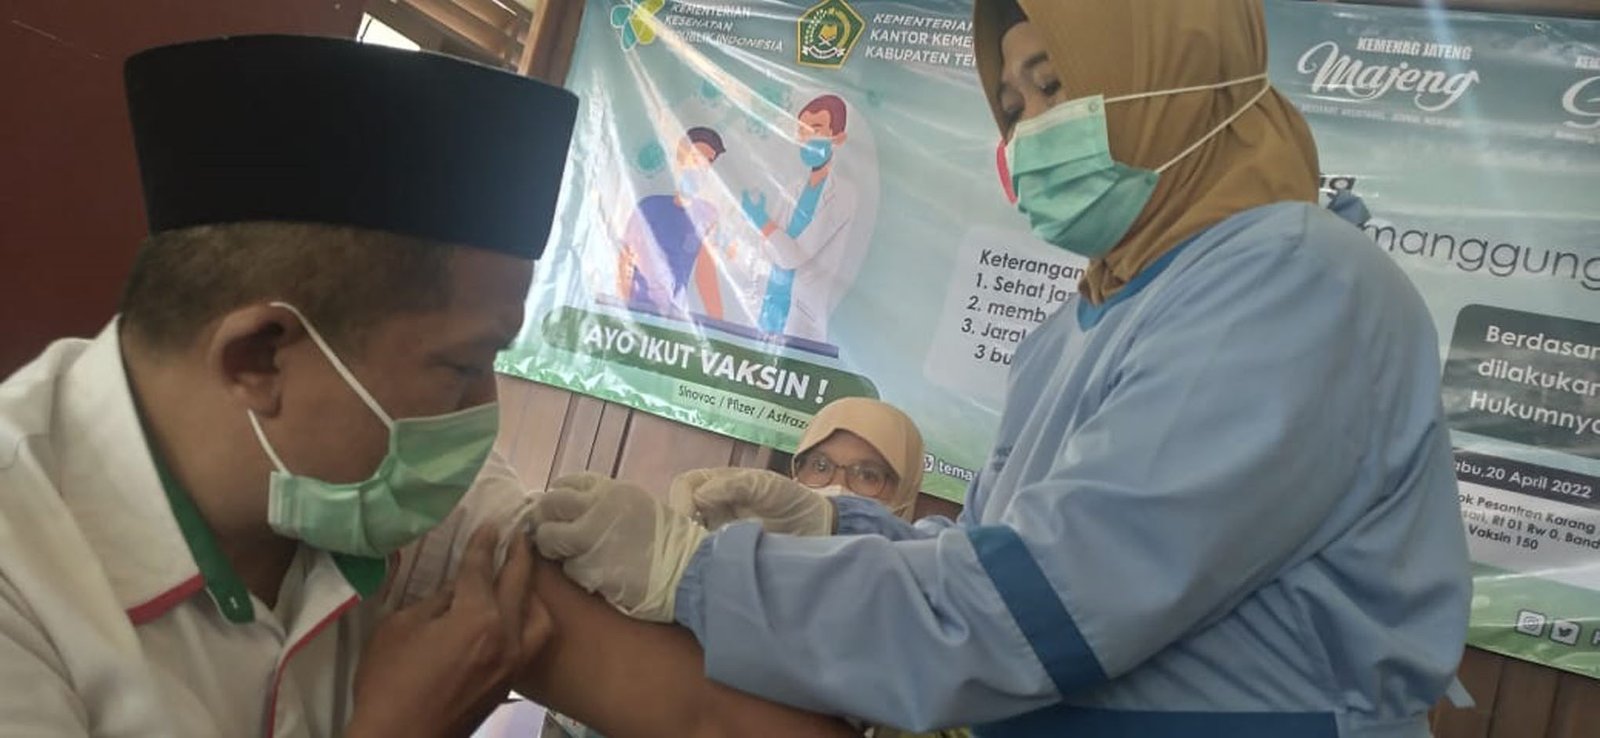 Petugas vaksinator dari Puskesmas Temanggung tengah memberikan dosis vaksin kepada masyarakat di Masjid Agung Darussallam Temanggung. (Foto: rizal ifan chanaris)